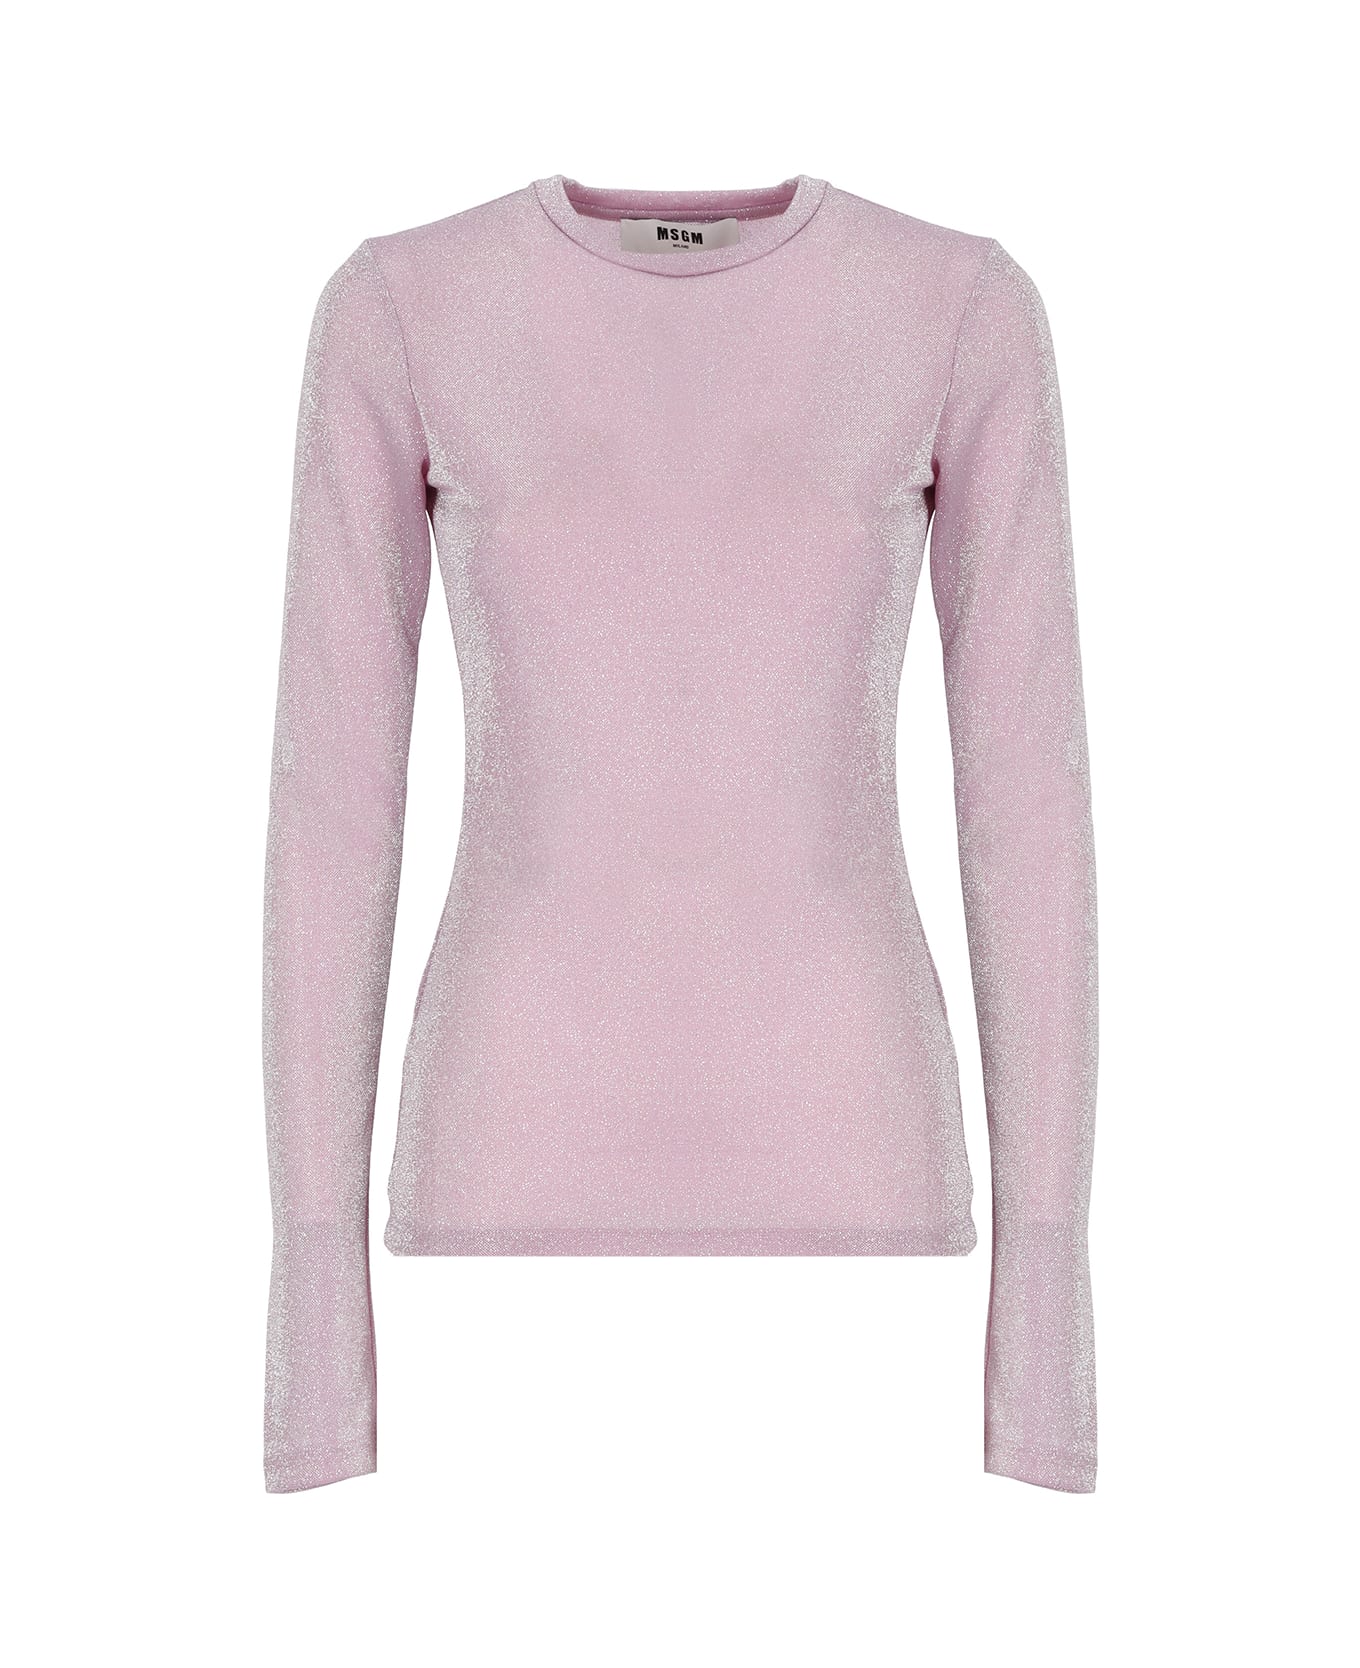 MSGM Lurex T-shirt - Pink